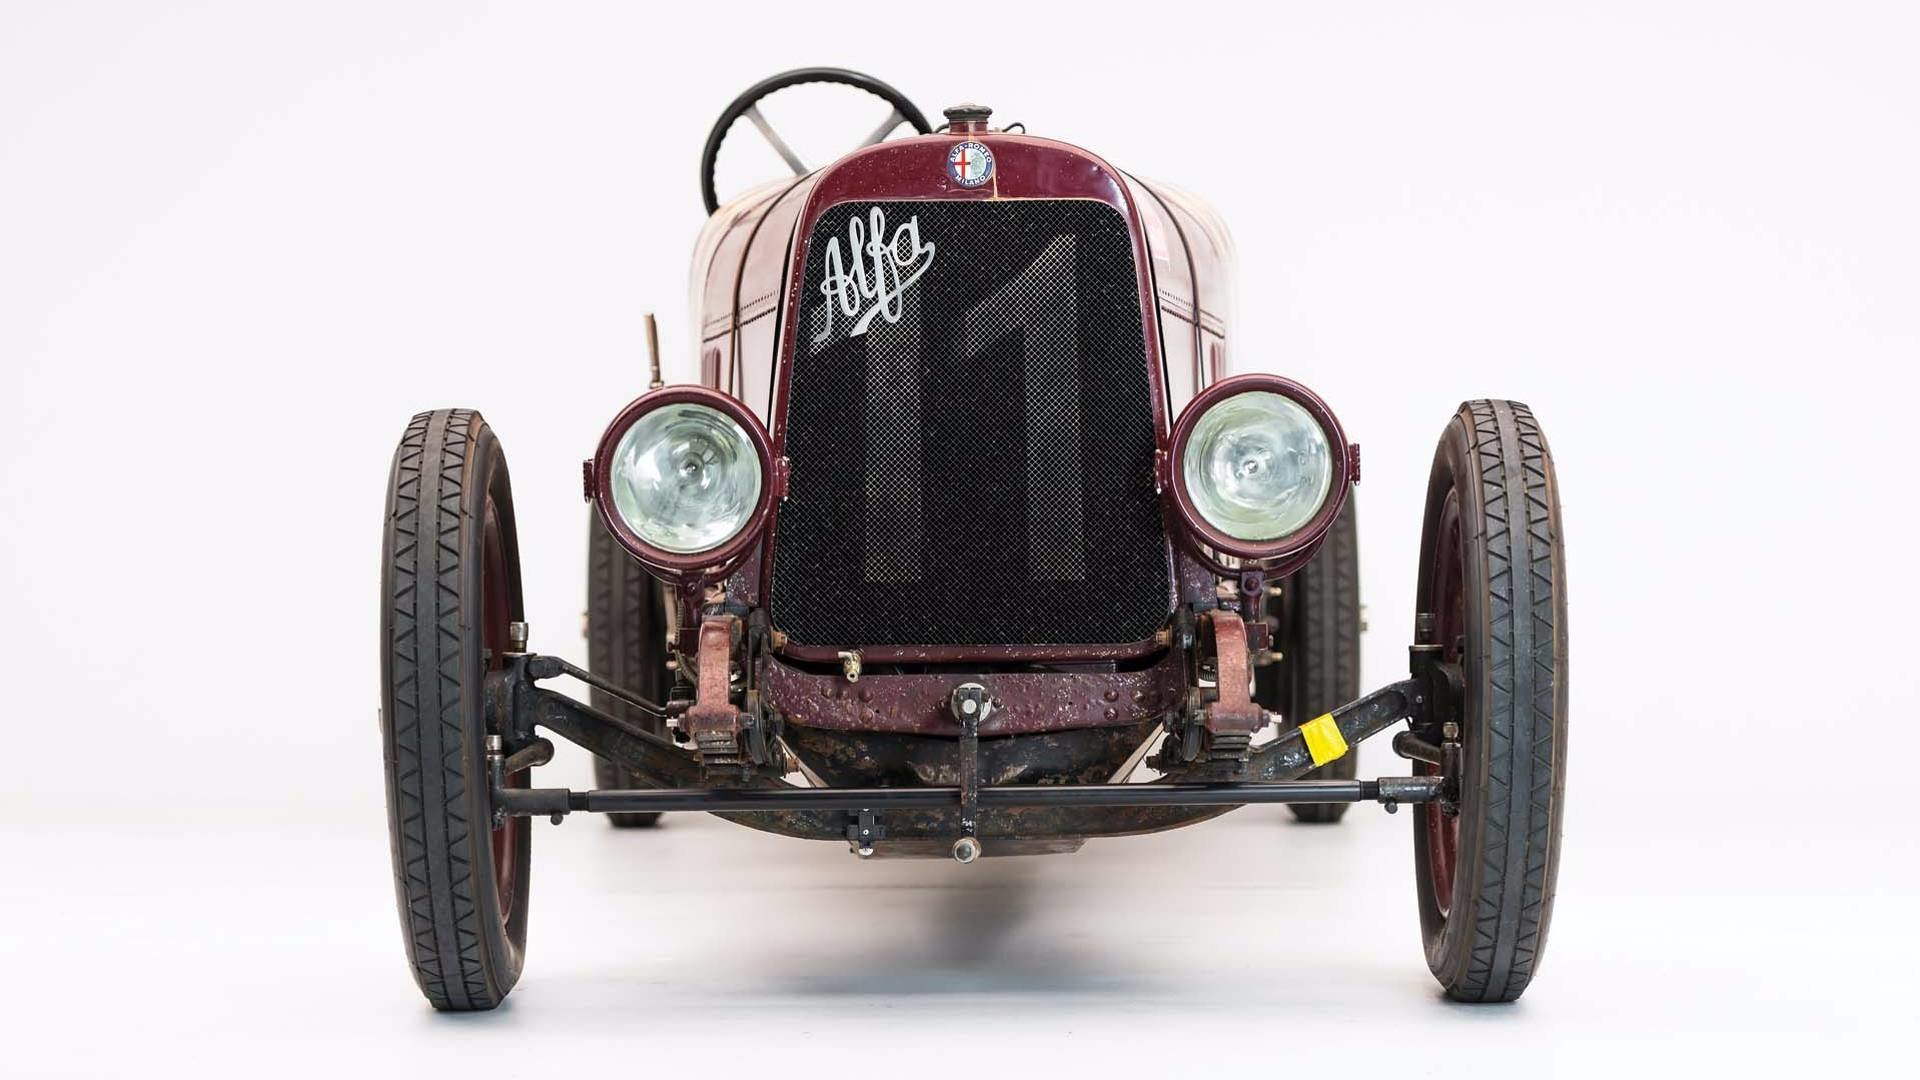 Alfa Romeo G1 z roku 1921